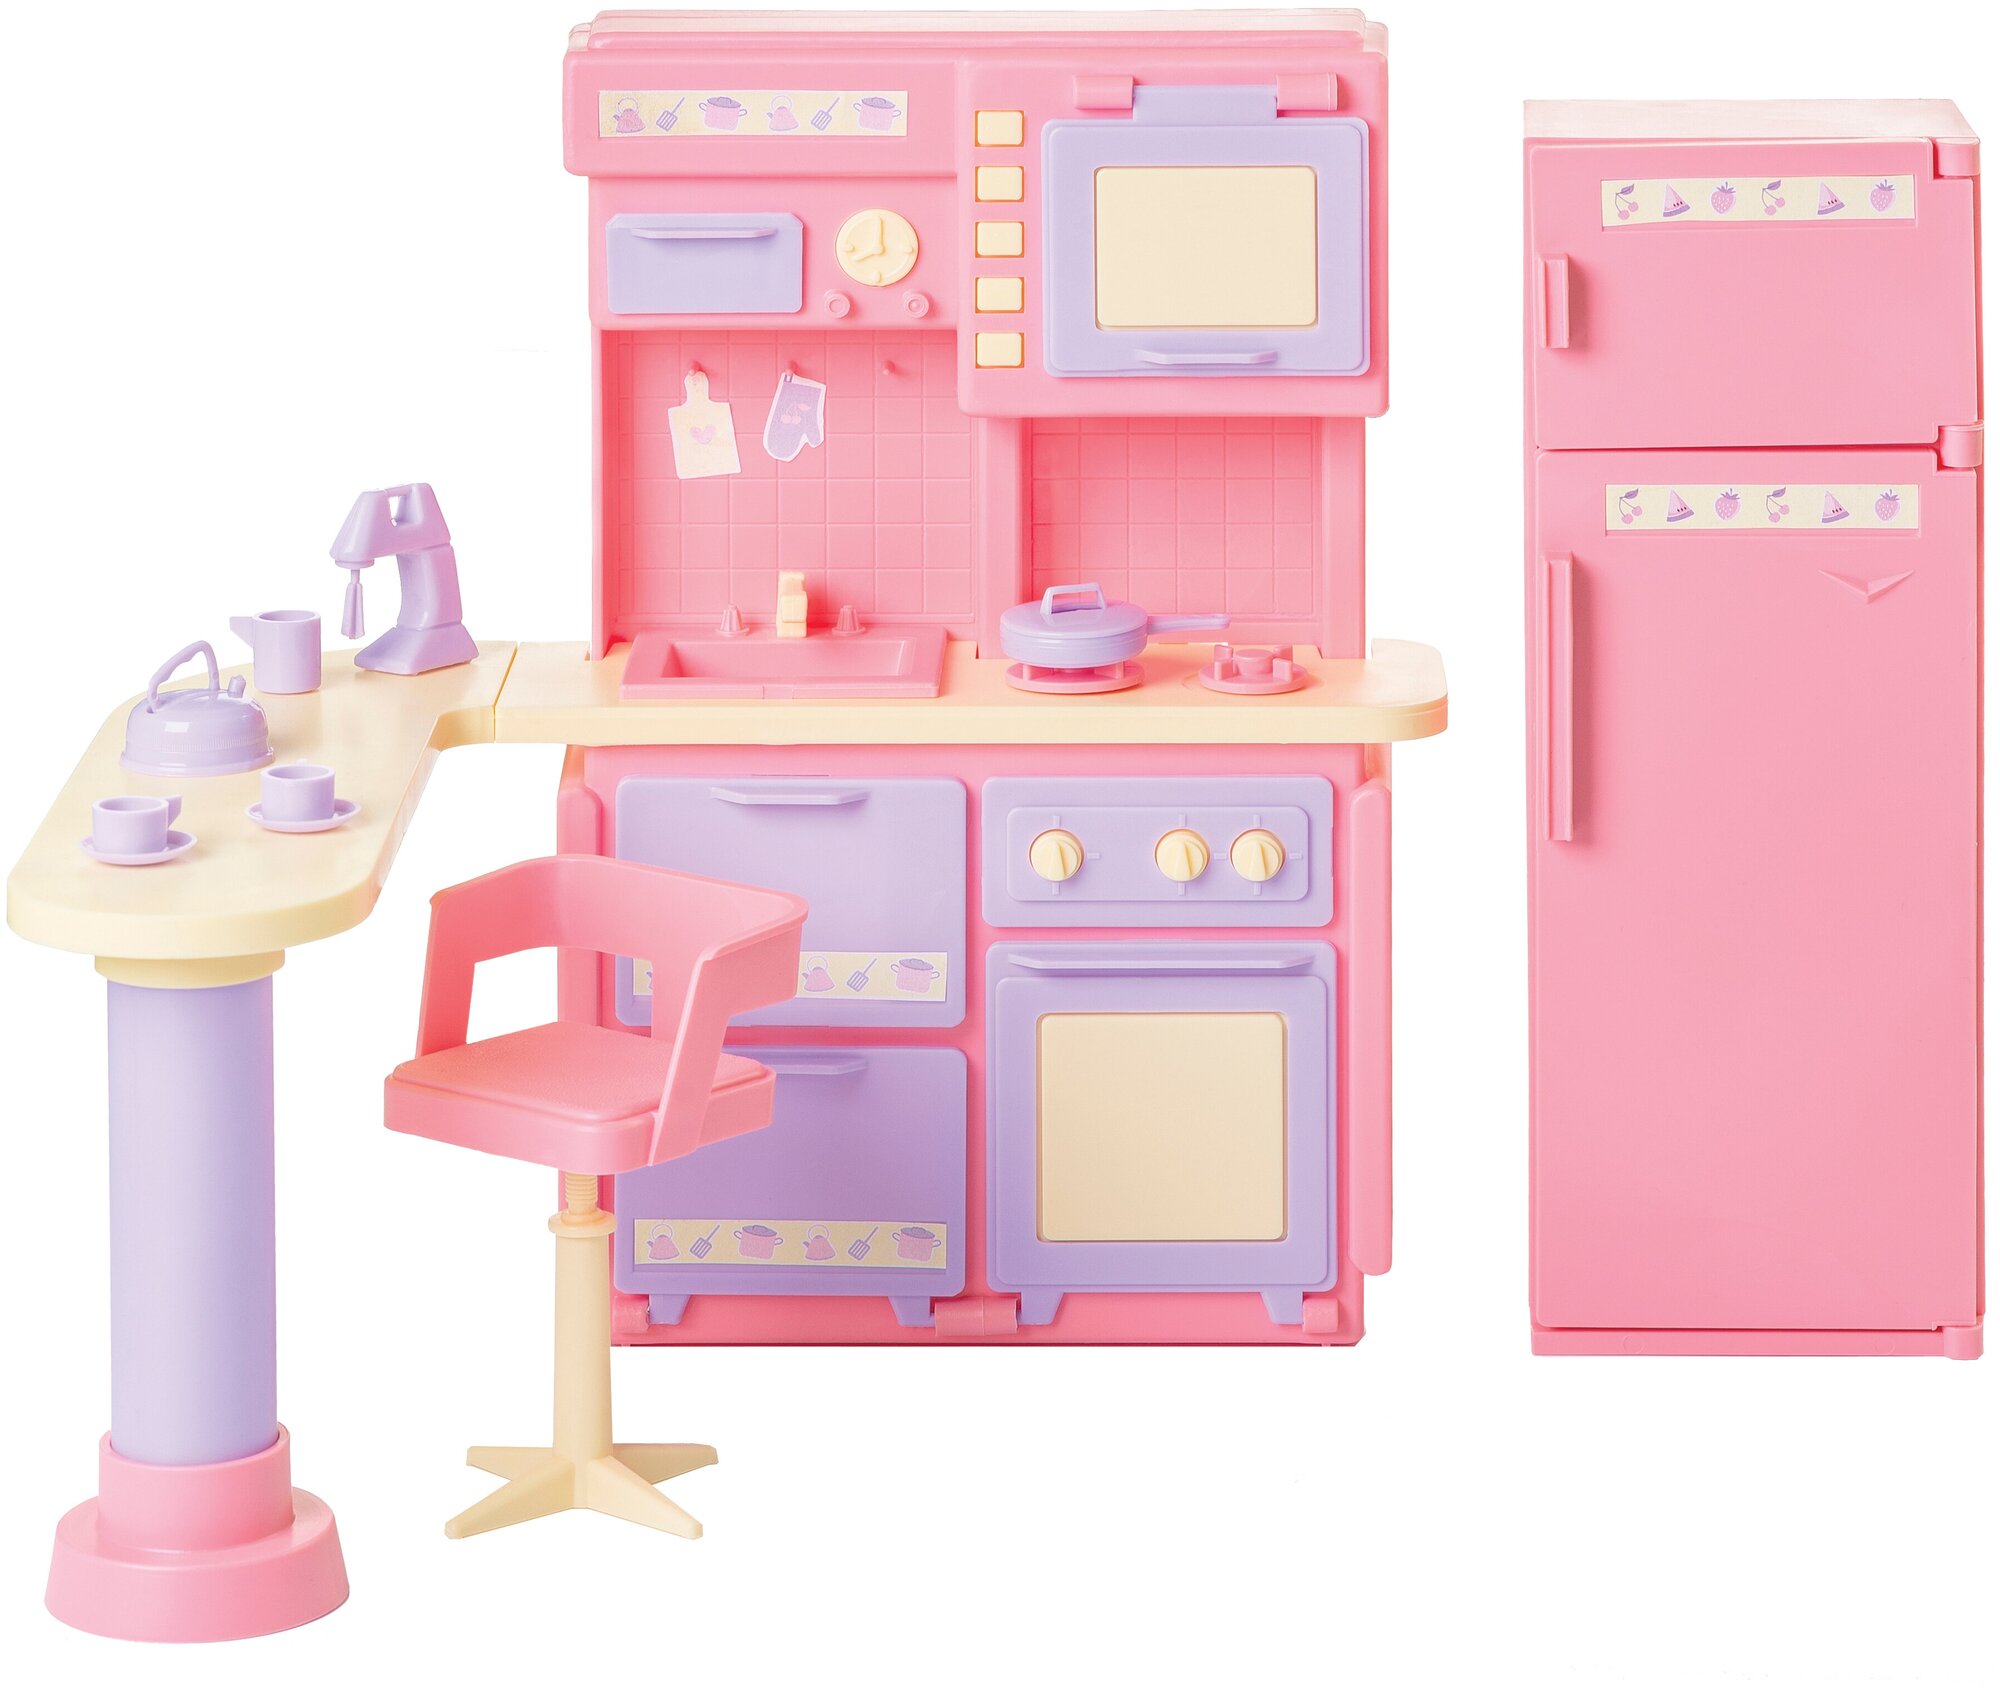 Мебель игрушечная Кухня Маленькая принцесса розовая ТМ Огонек